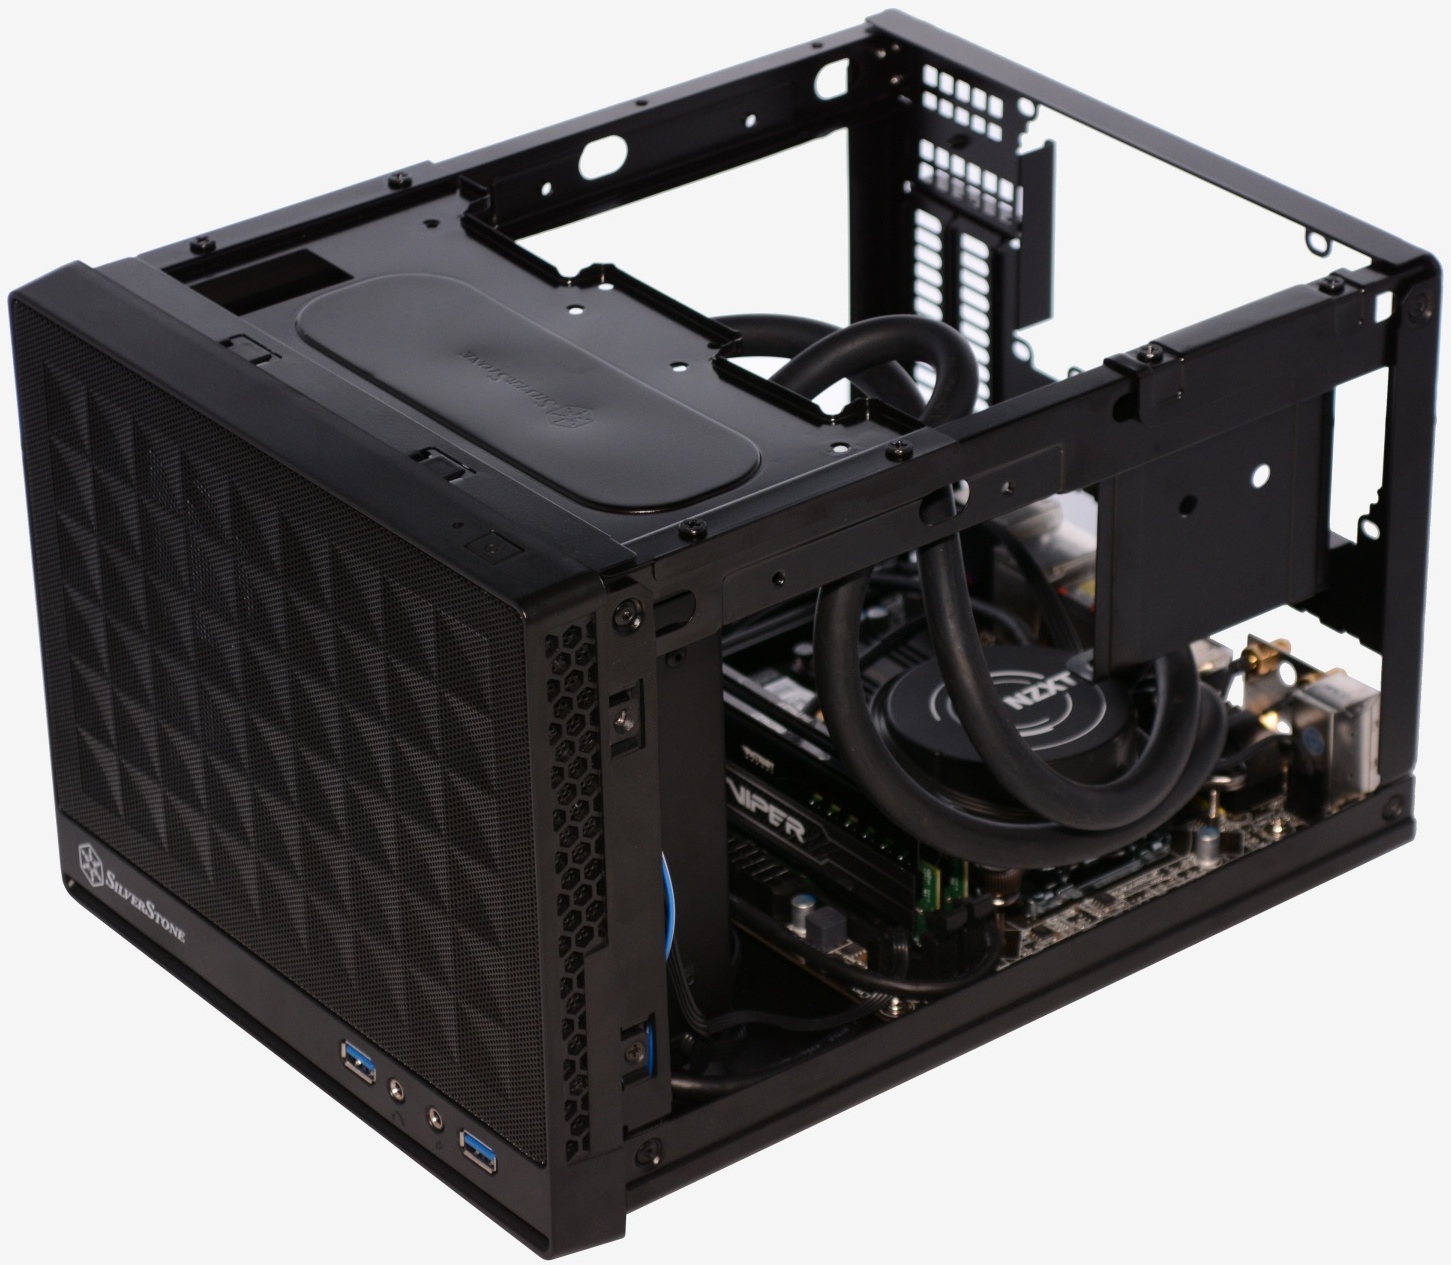 Silverstone Sugo SG13 Mini-ITX Case Review > Installation 